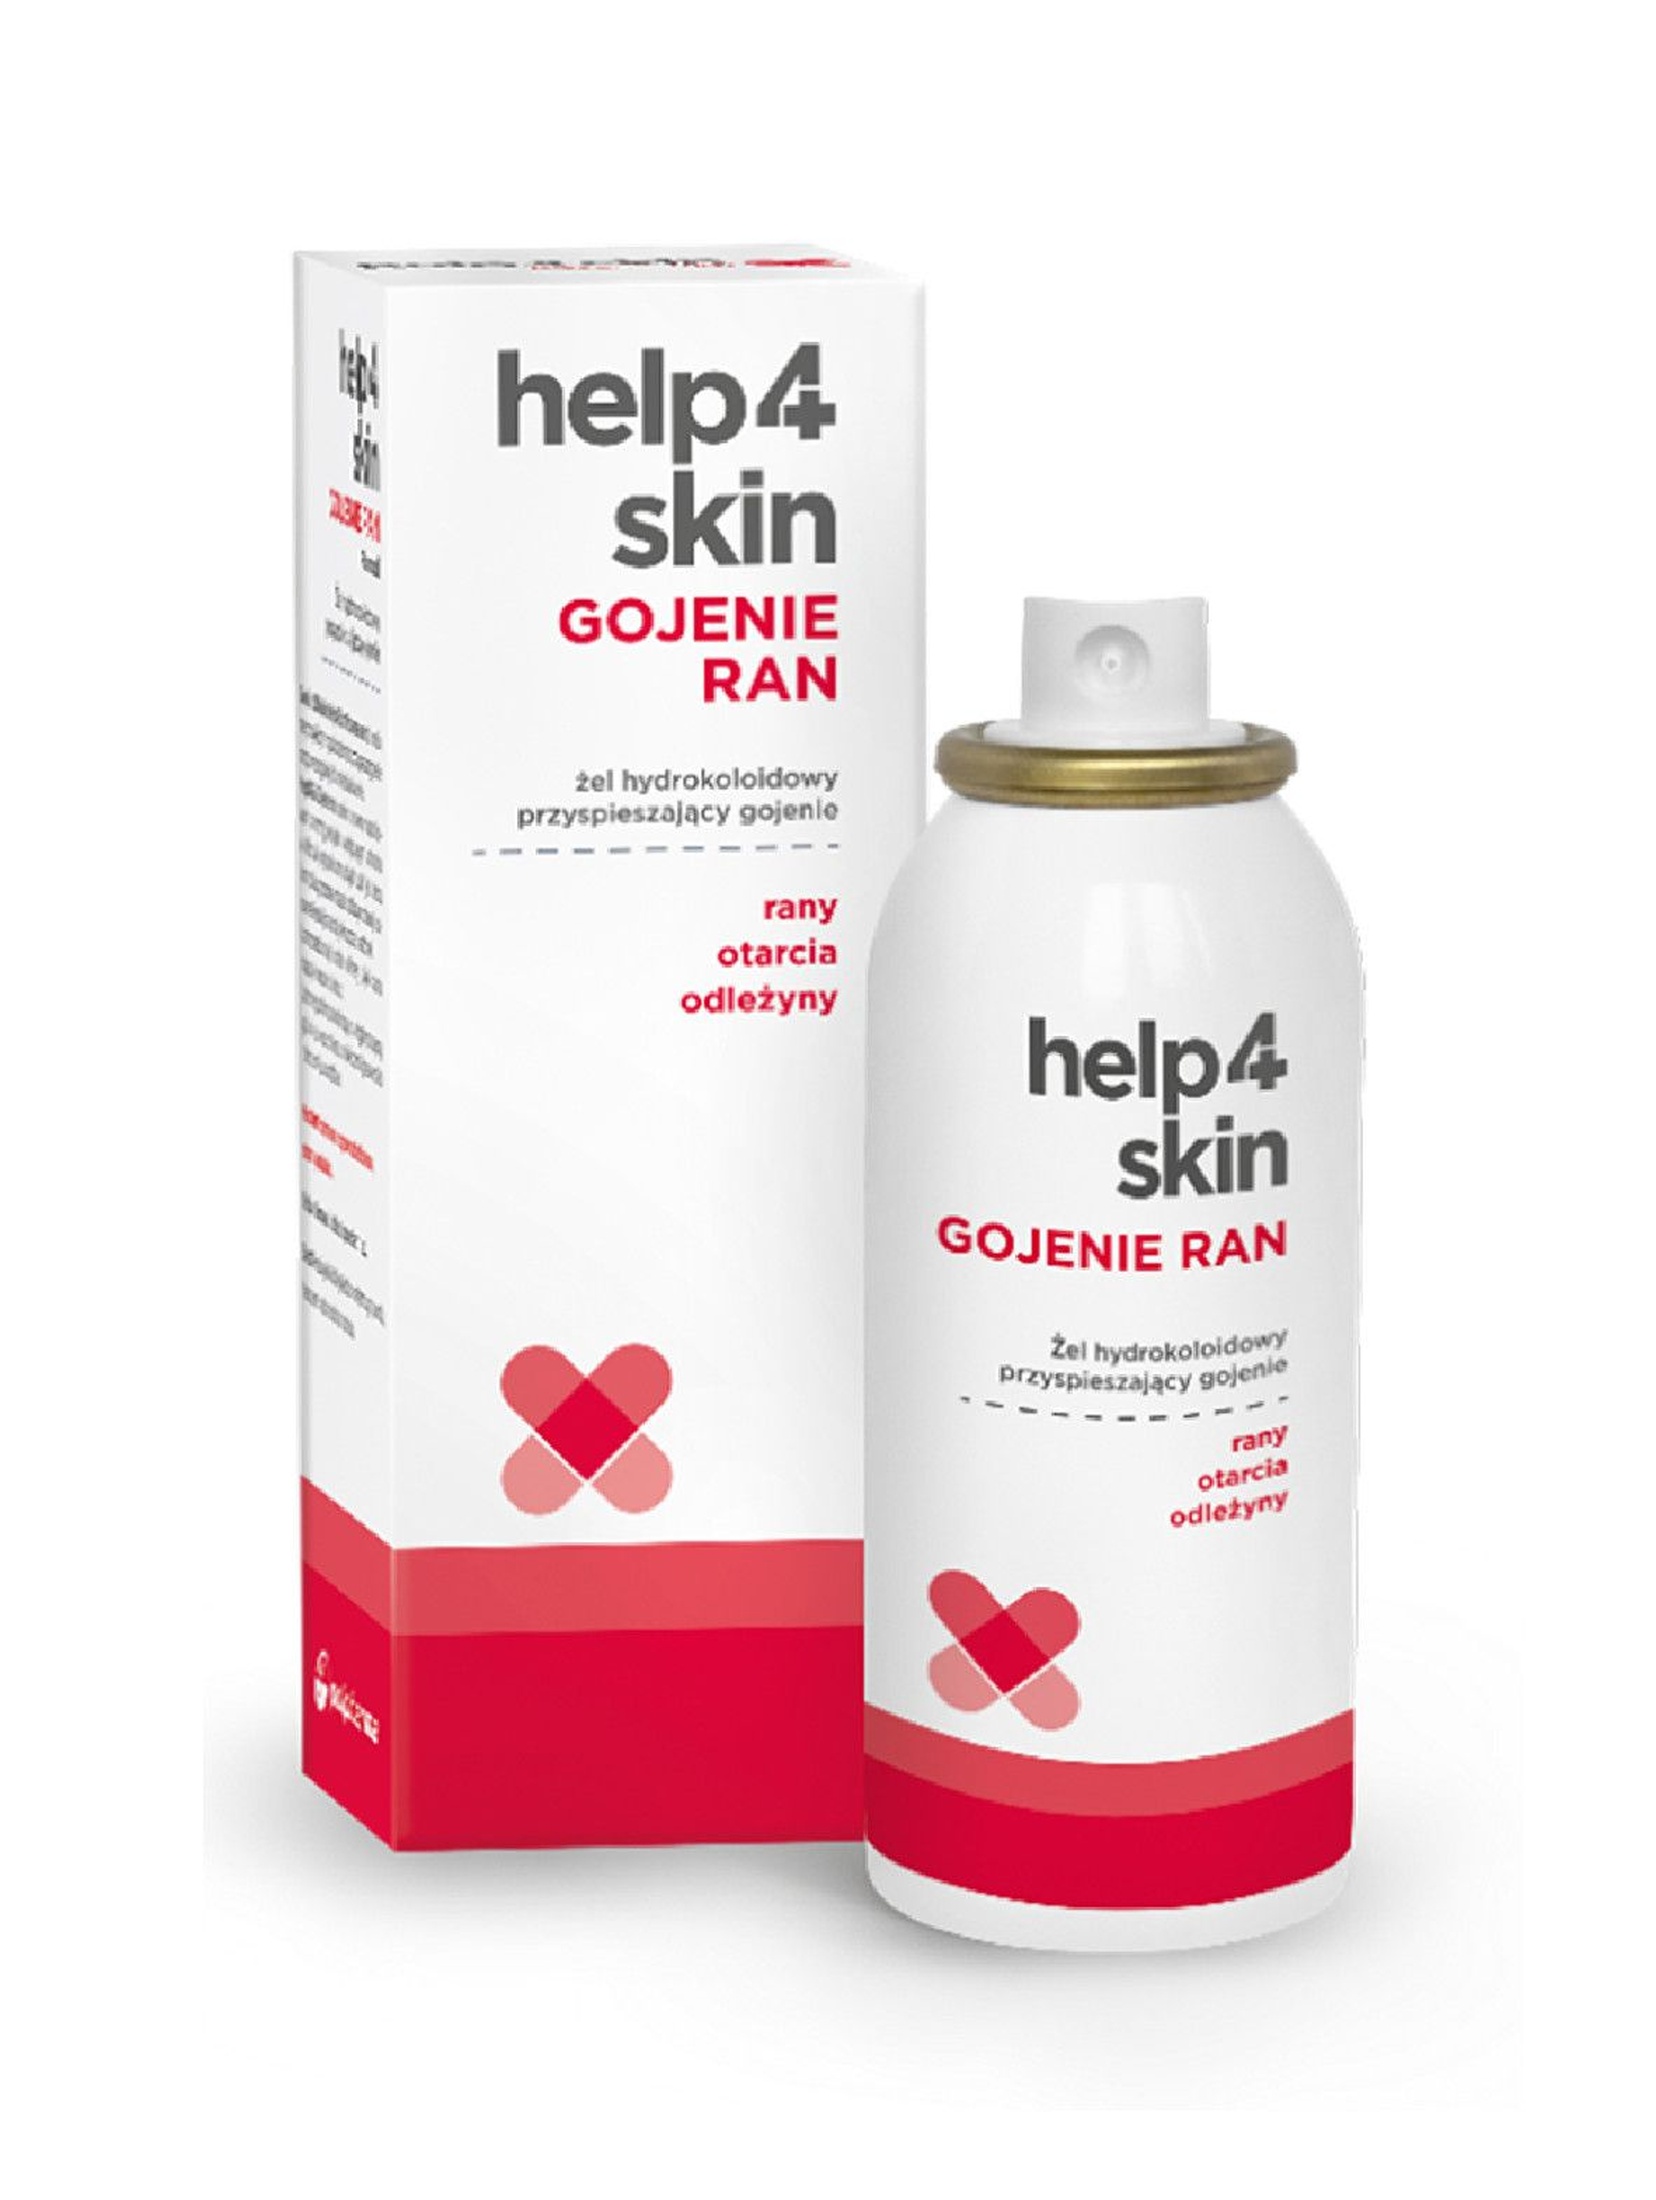 Help4Skin Gojenie Ran spray 75 g